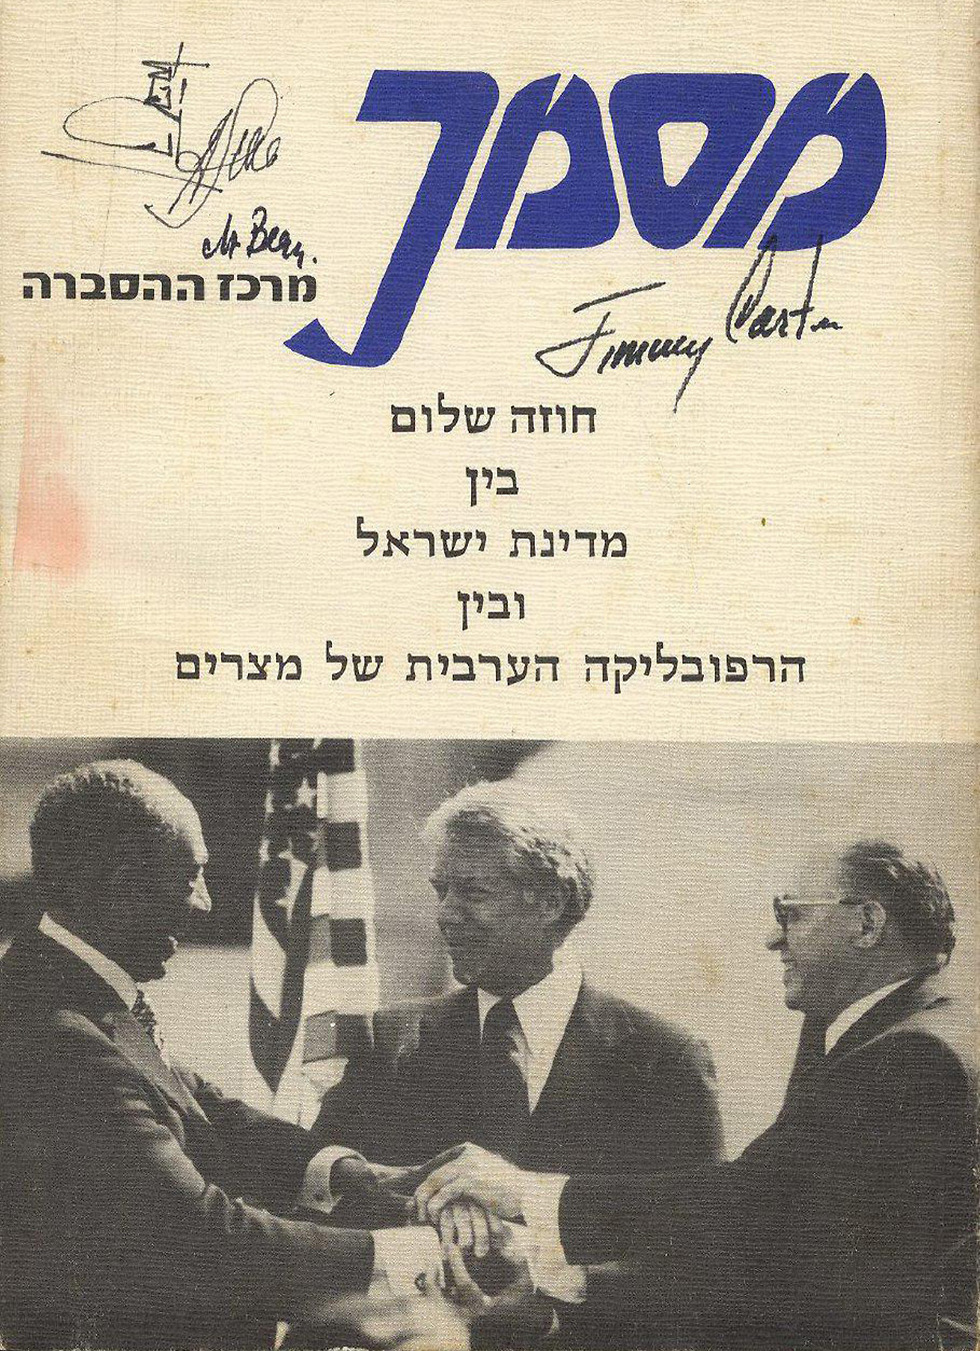 עותק הסכם השלום המקורי בין ישראל למצרים מוצע למכירה פומבית (צילום: בית המכירות ווינרס)